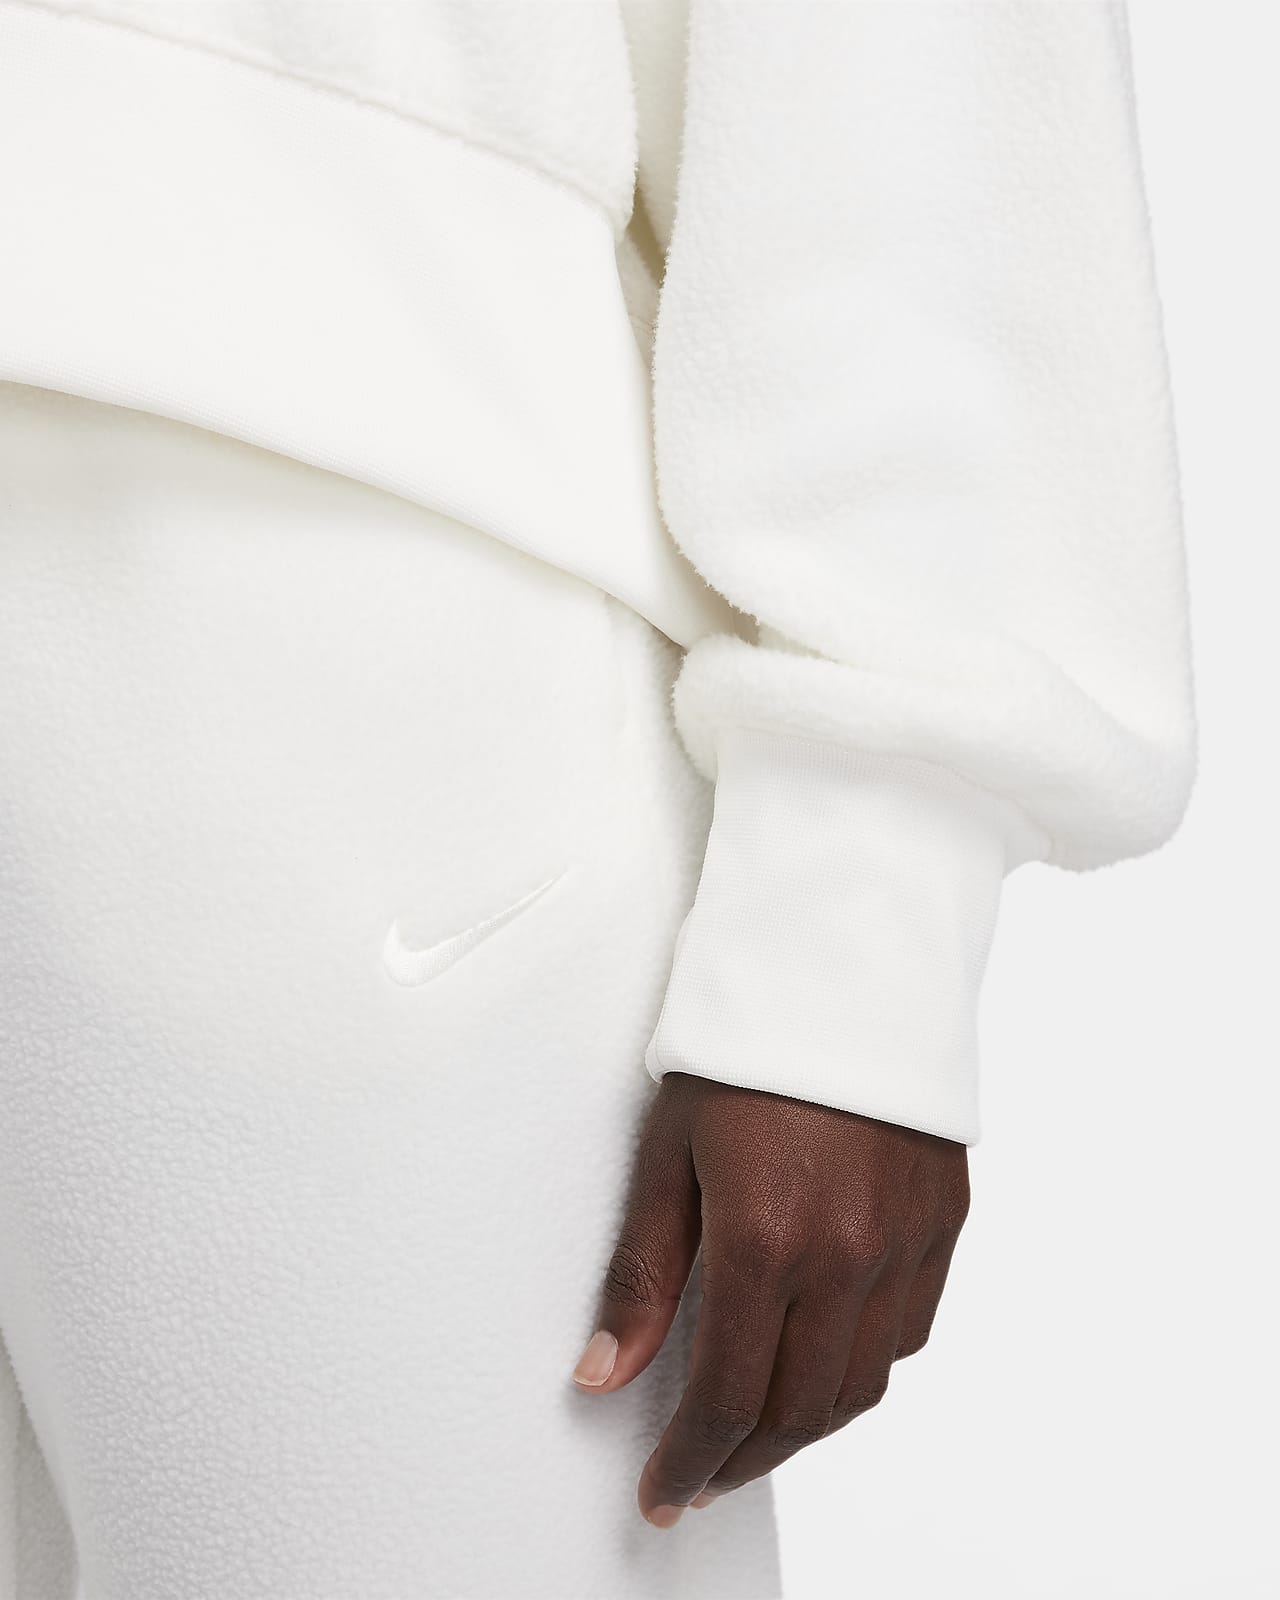 Nike Sportswear Plush Women's Oversized Crew-Neck Mod Crop Sweatshirt.